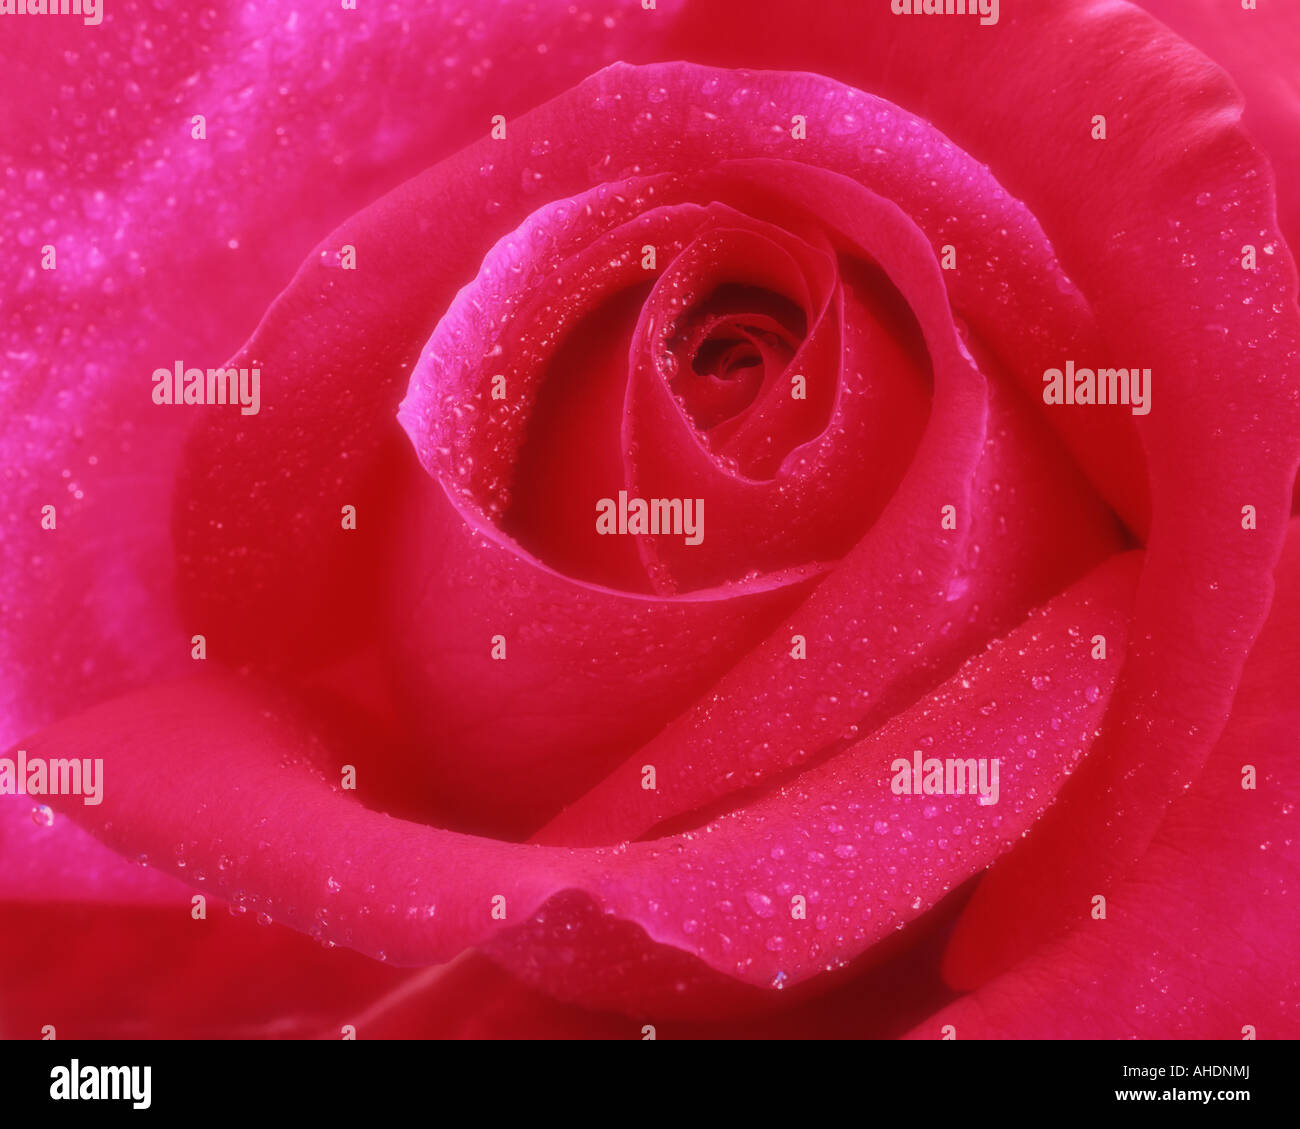 FLORA: Rosa roja en inglés Foto de stock